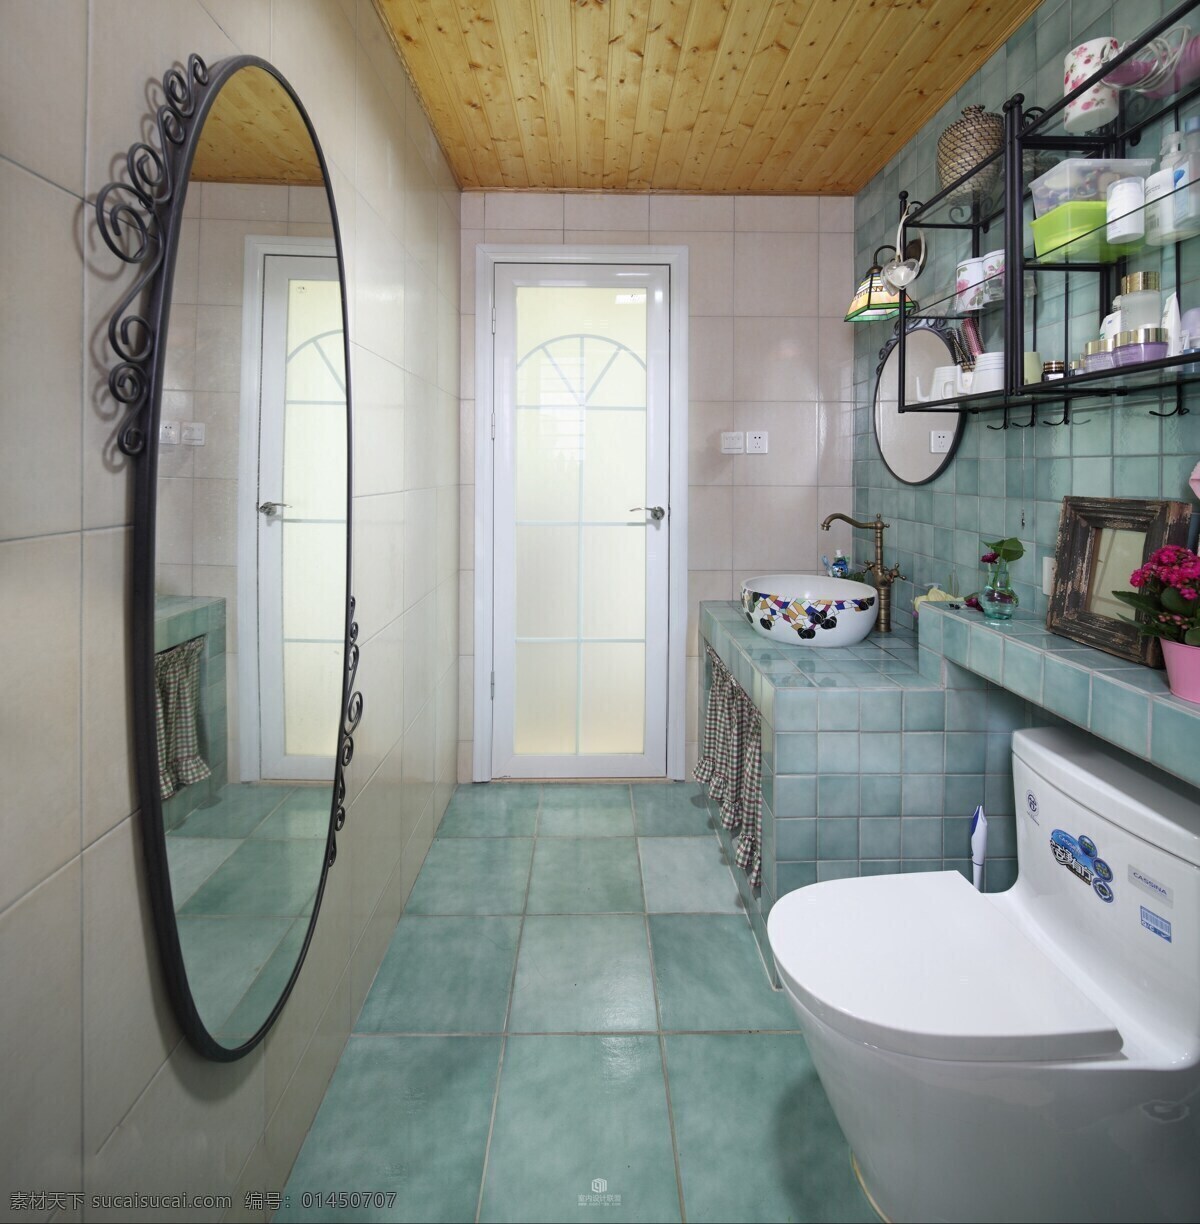 现代 时尚 浴室 蓝绿色 格子 地板 室内装修 效果图 浴室装修 蓝绿色地板 白色背景墙 瓷砖桌面